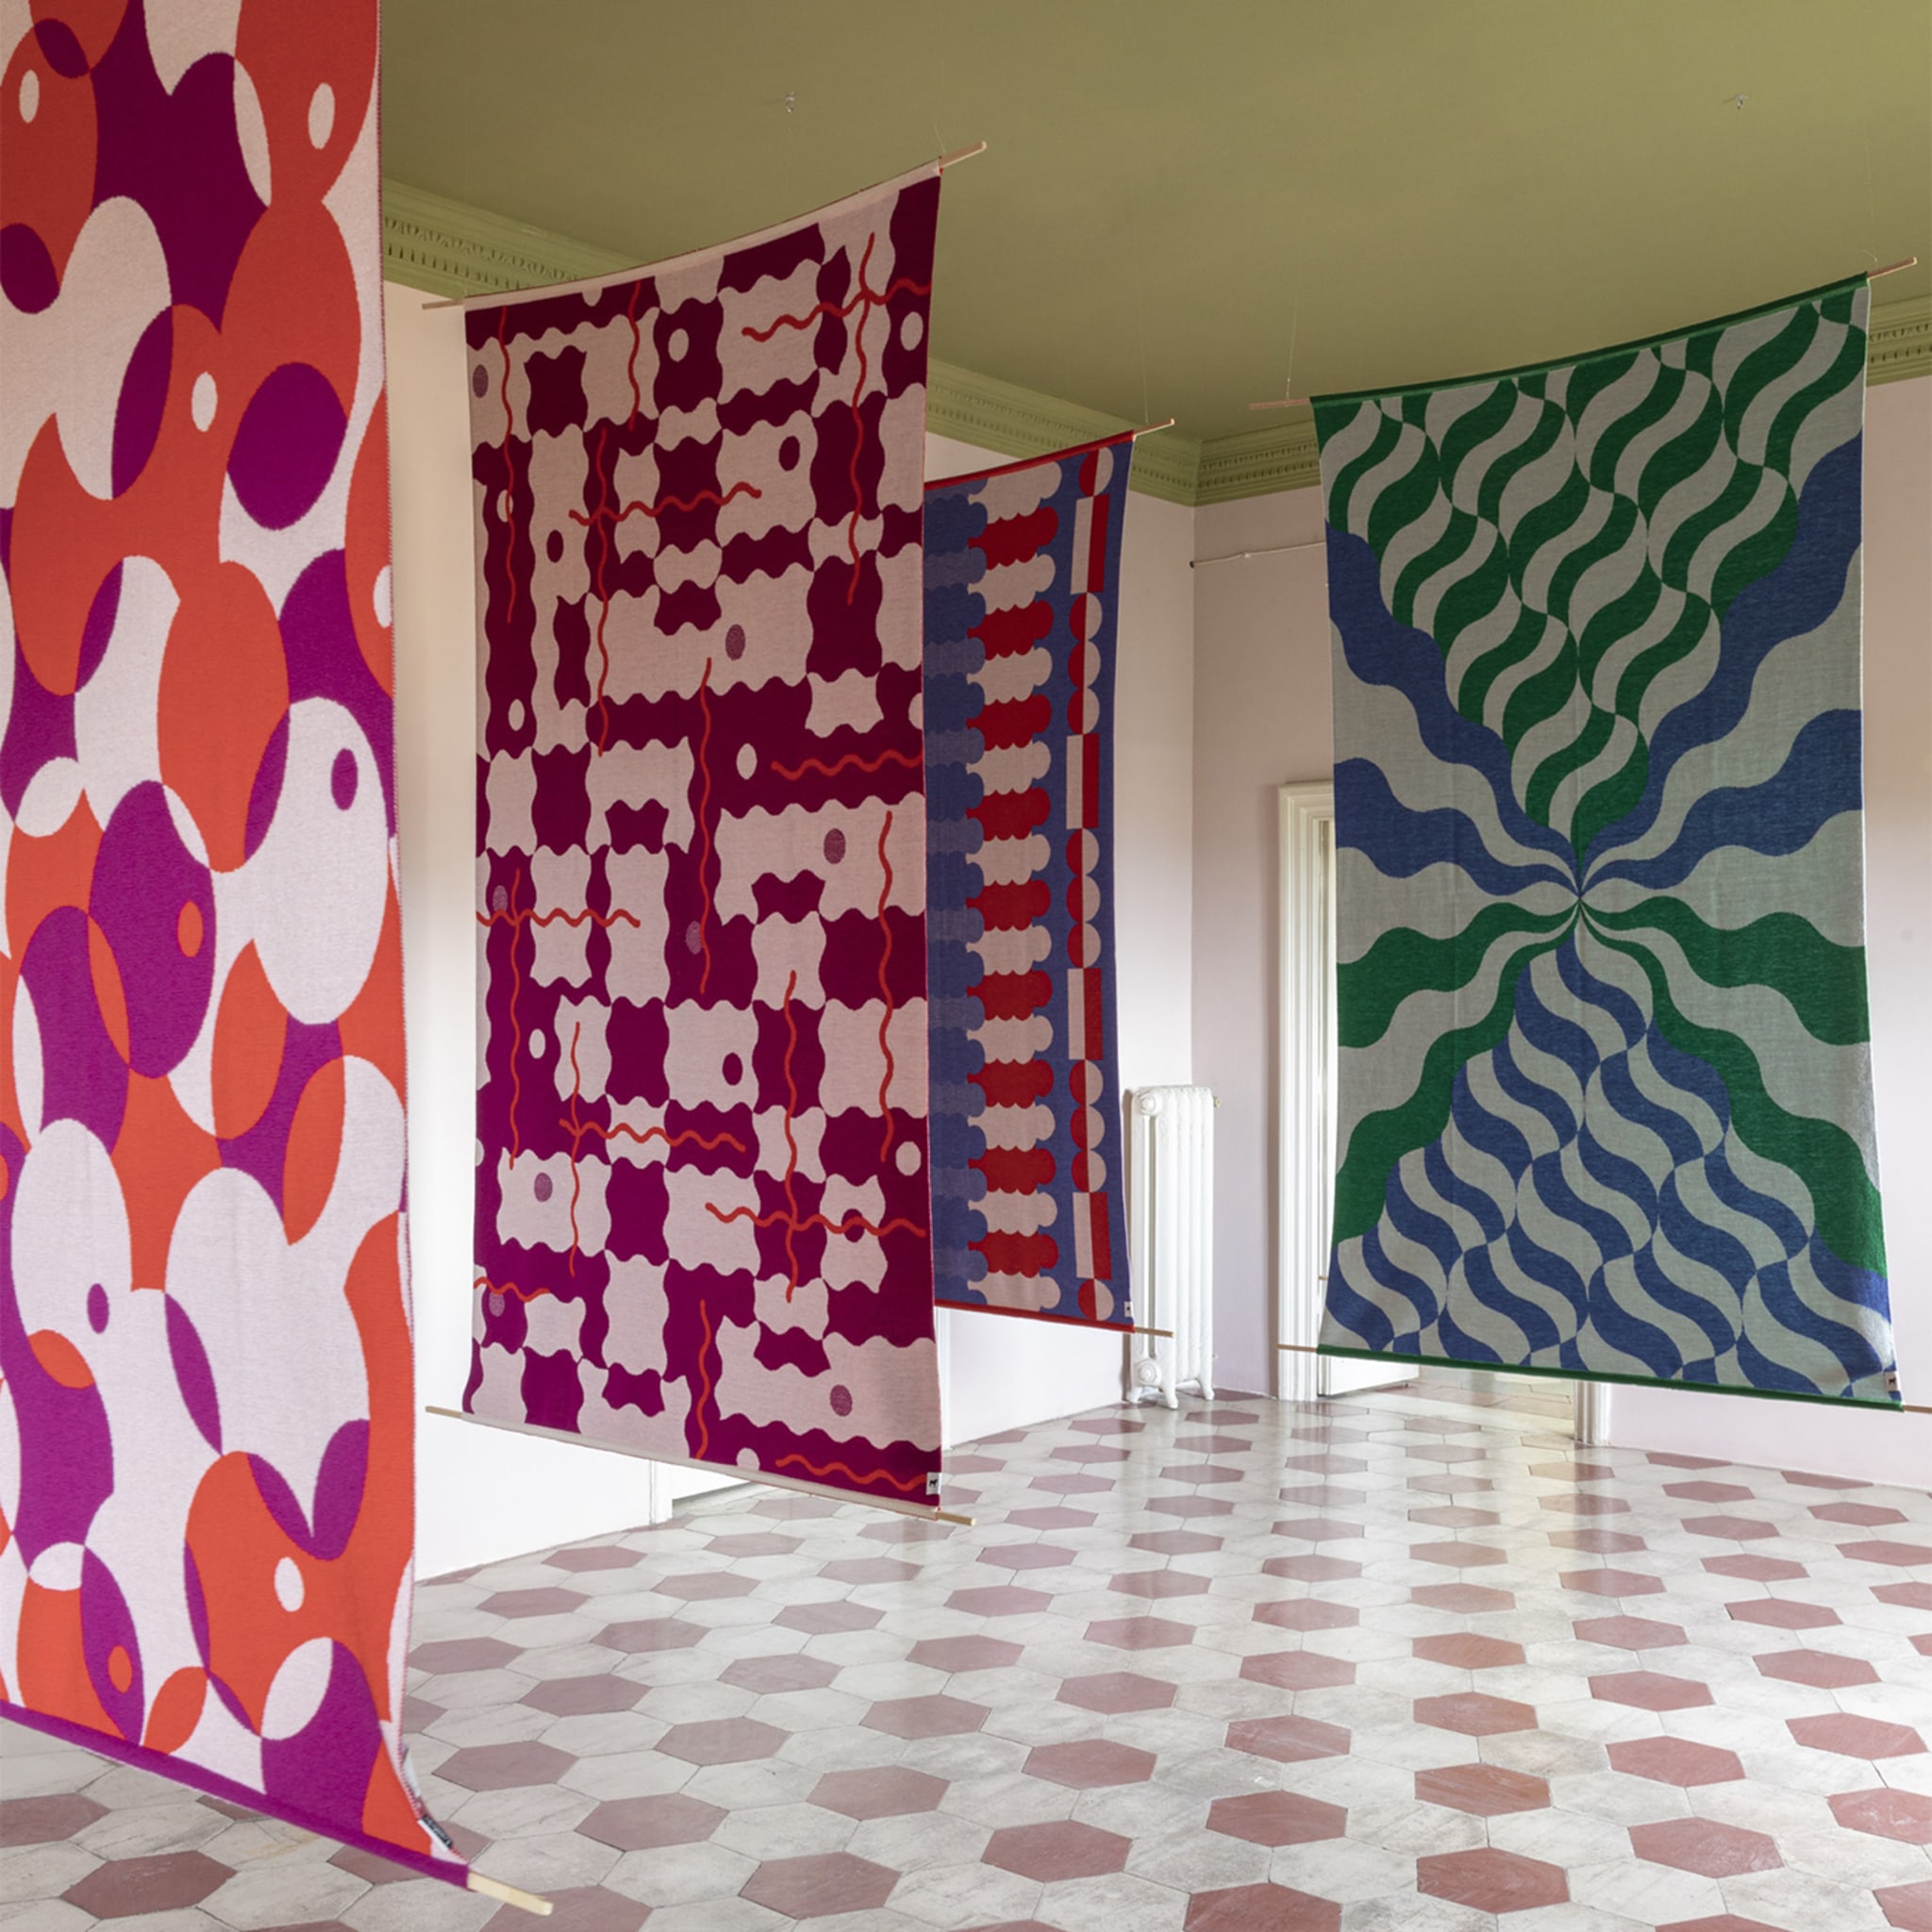 Trip 3 Polychrome Blanket/Tapestry by Serena Confalonieri - Alternative view 1